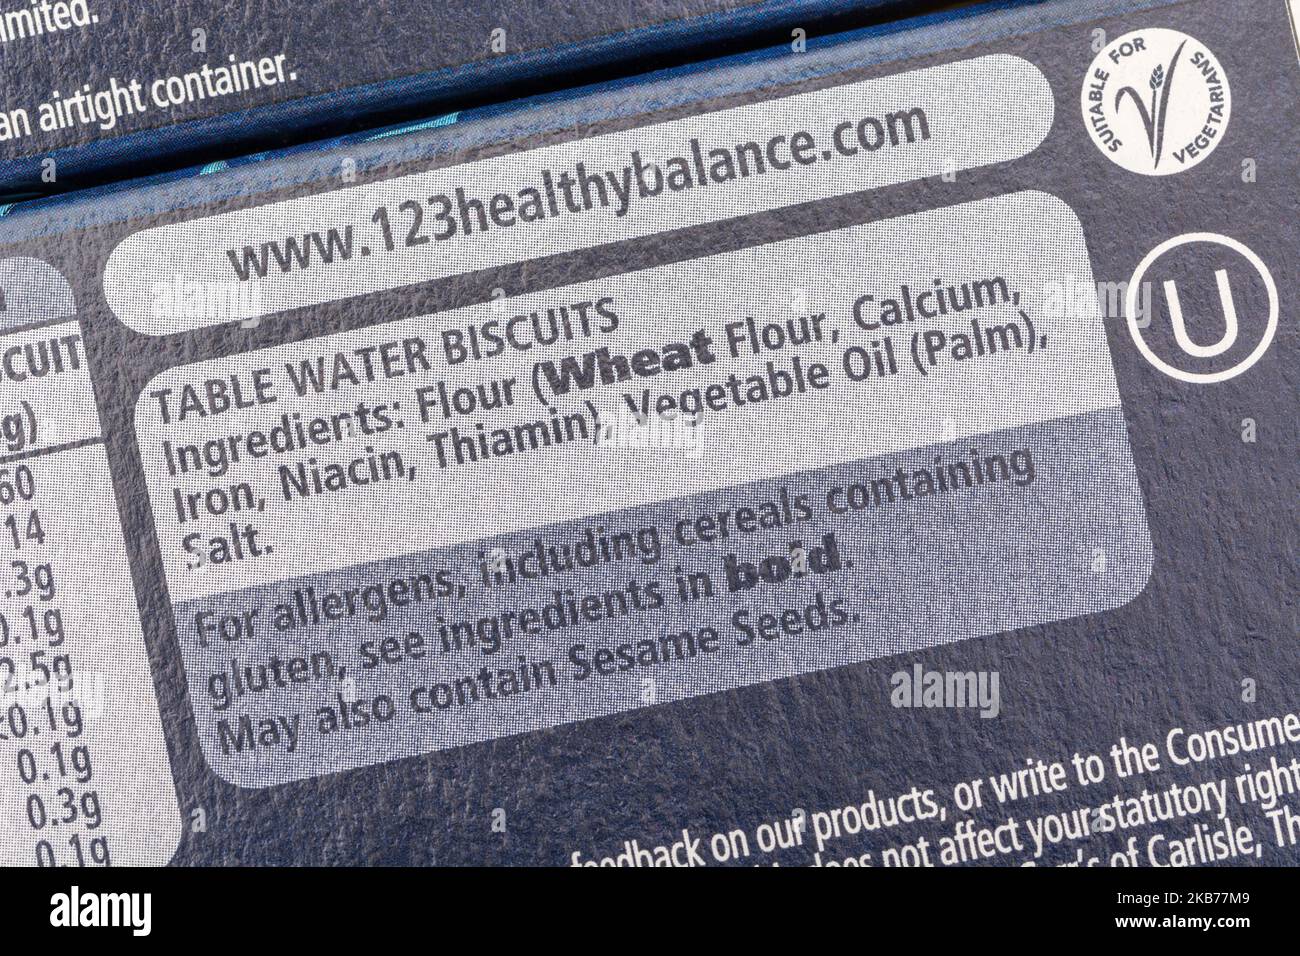 Nahaufnahme des Inhaltsstoffetiketts auf einer Packung Carr's Table Water Biscuits mit Allergen-Warnhinweisen. Für die Kennzeichnung von Lebensmitteln. Stockfoto